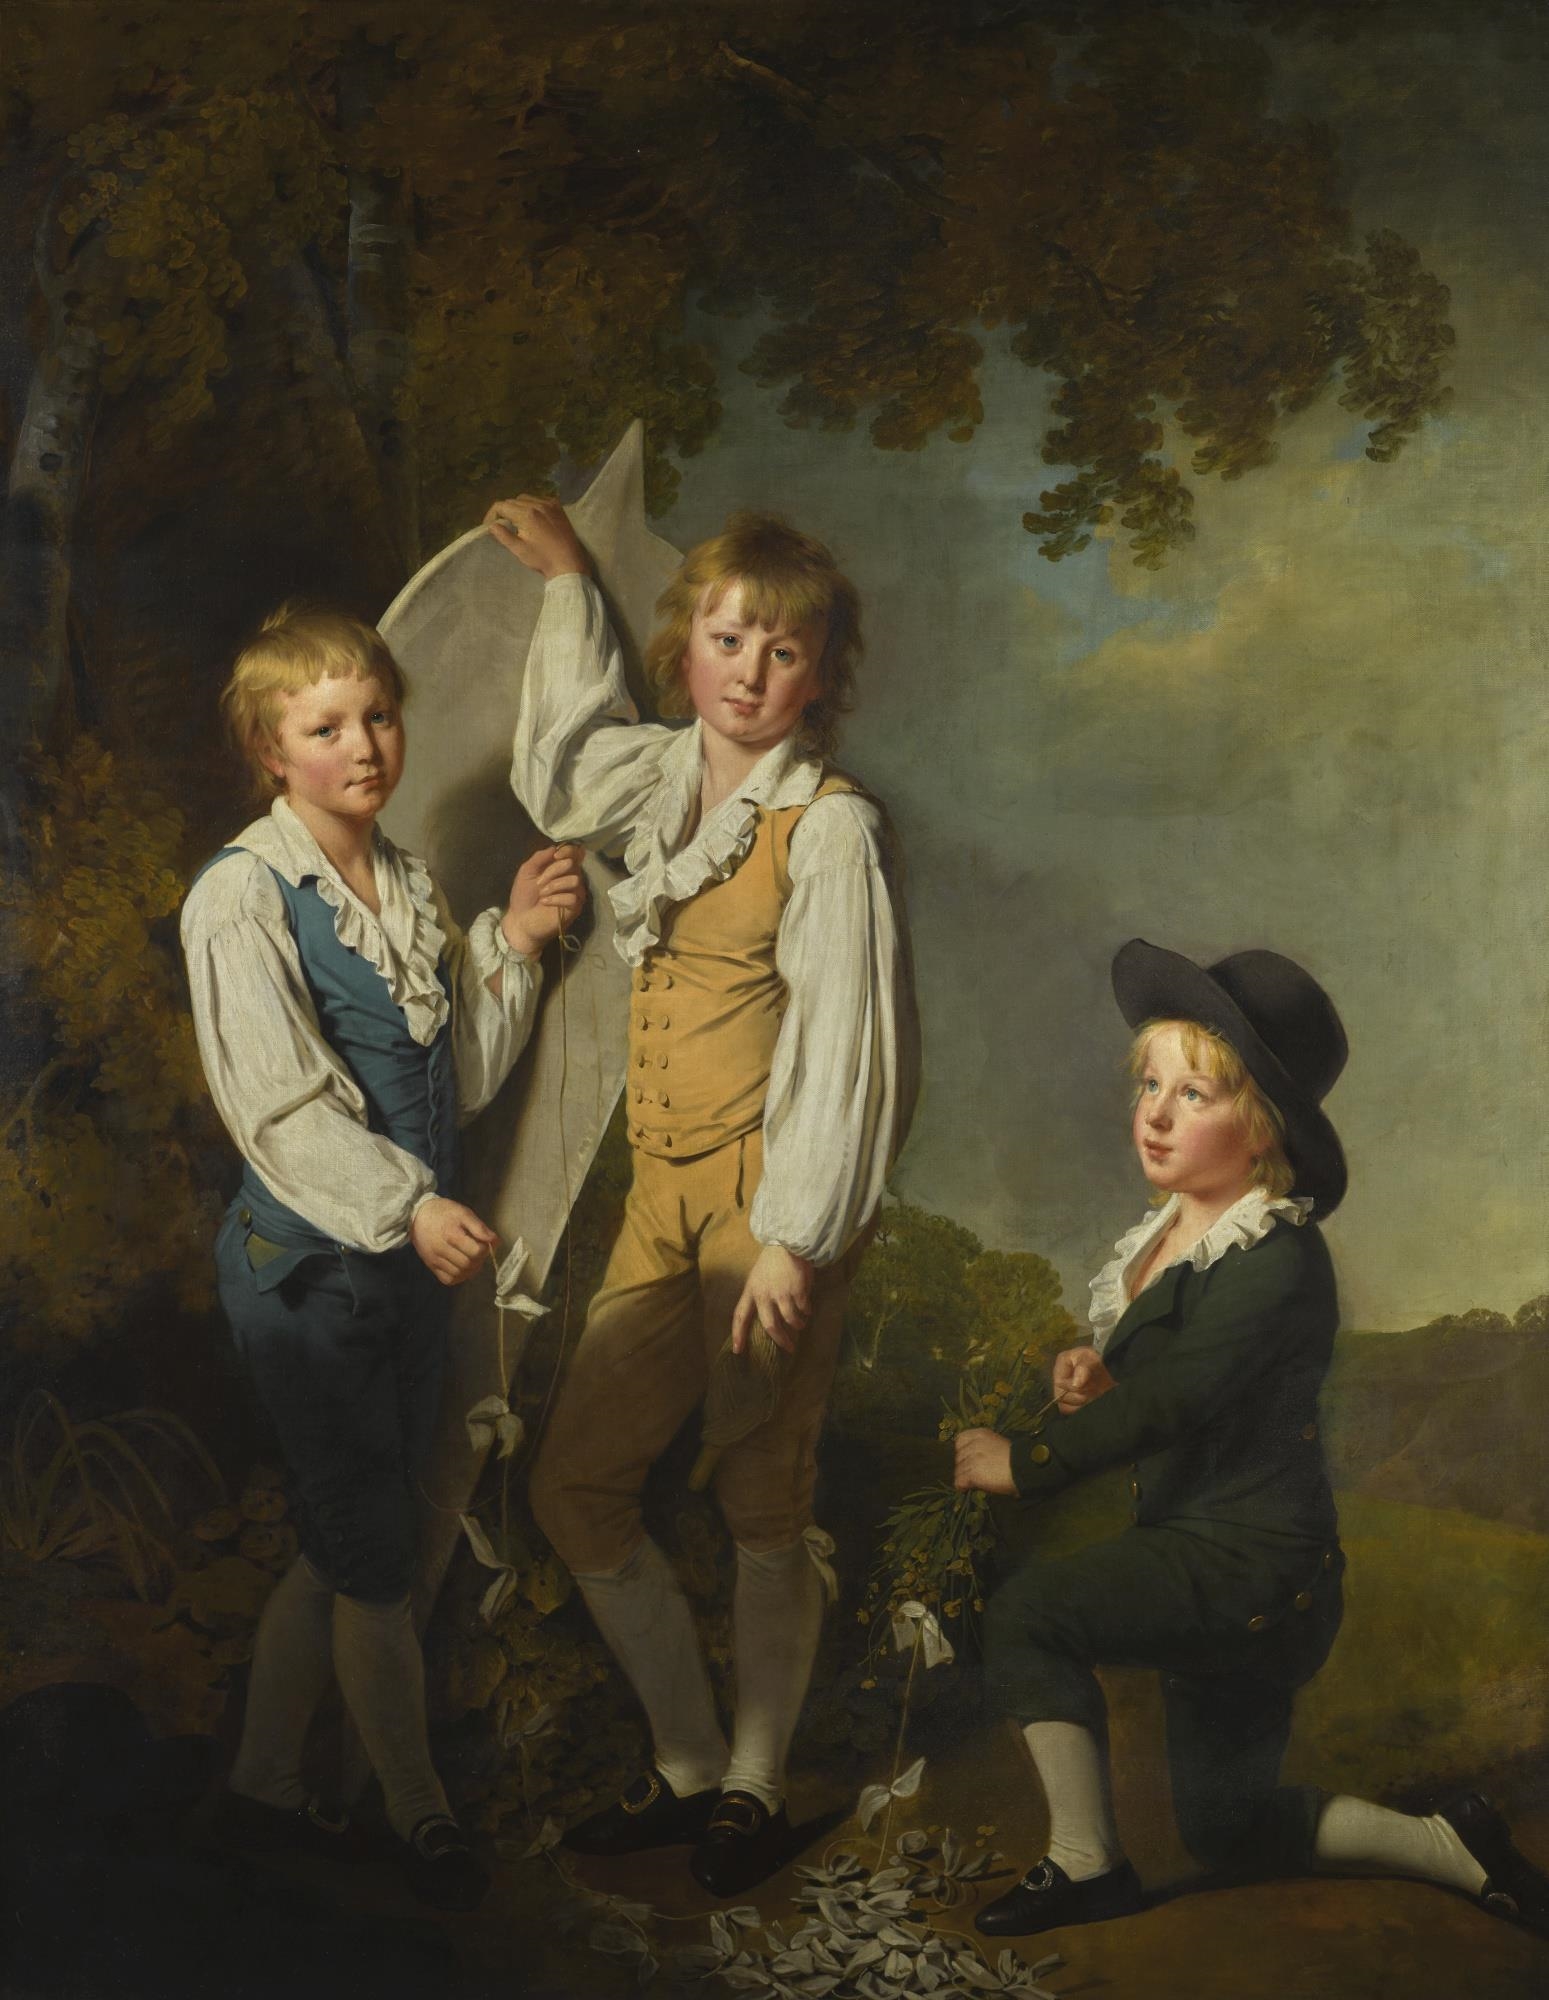 Мальчик 18 века. Joseph Wright of Derby картины.